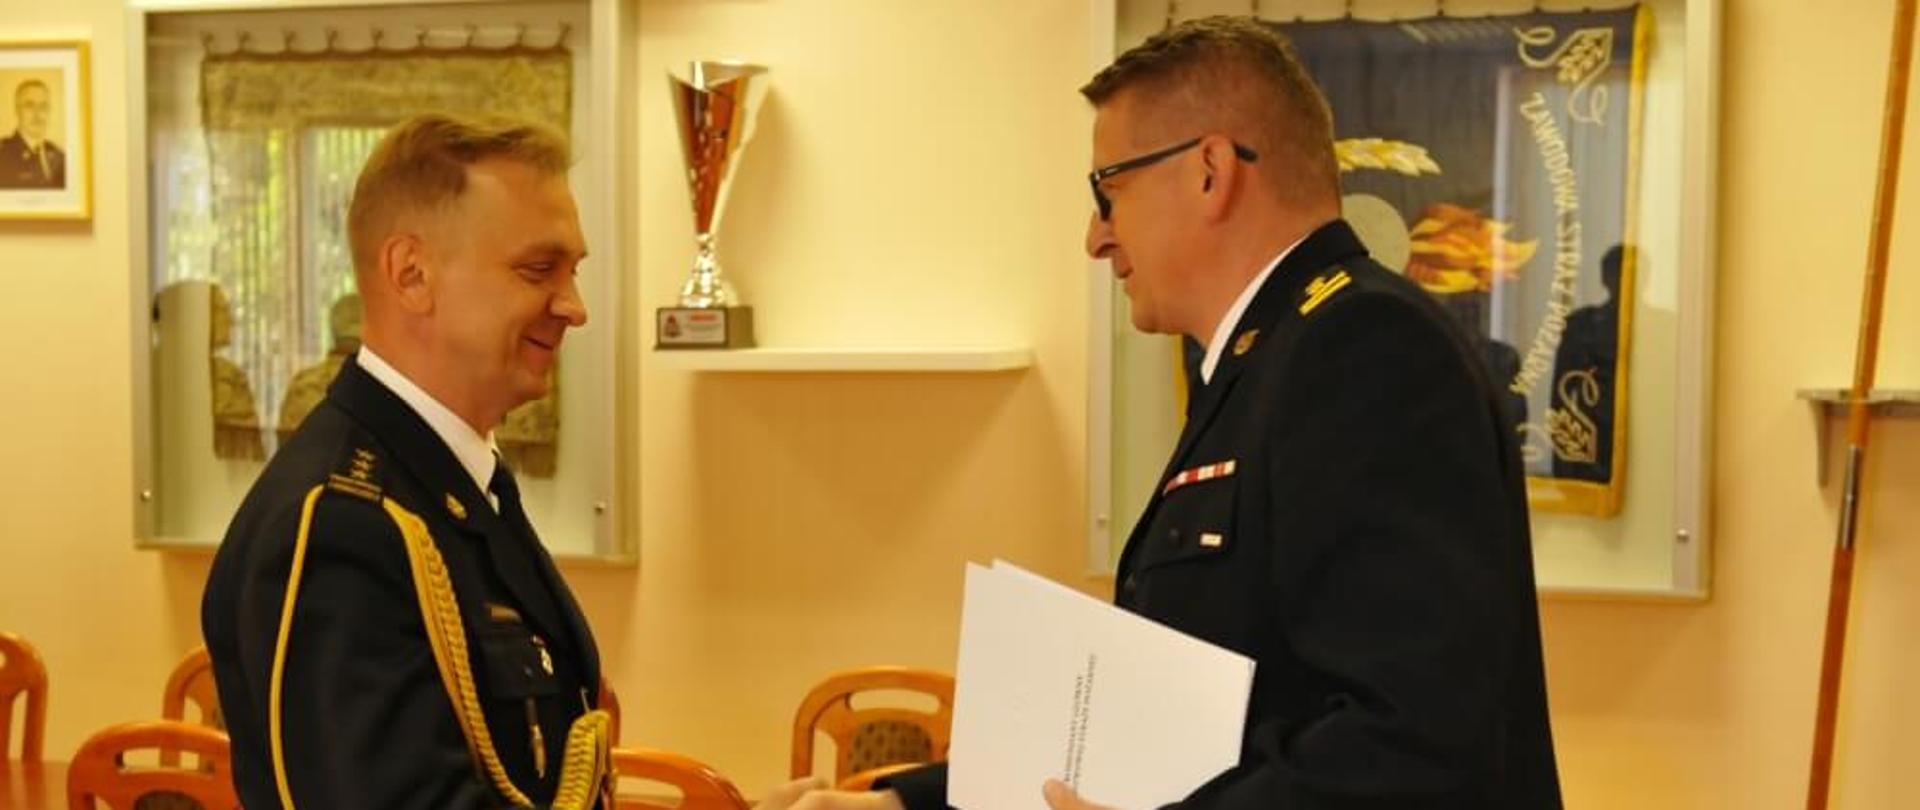 Powołanie zastępcy łódzkiego komendanta wojewódzkiego PSP – na zdjęciu wręczenia aktu powołania dokonuje st. bryg. Krzysztof Hejduk zastępca komendanta głównego PSP.